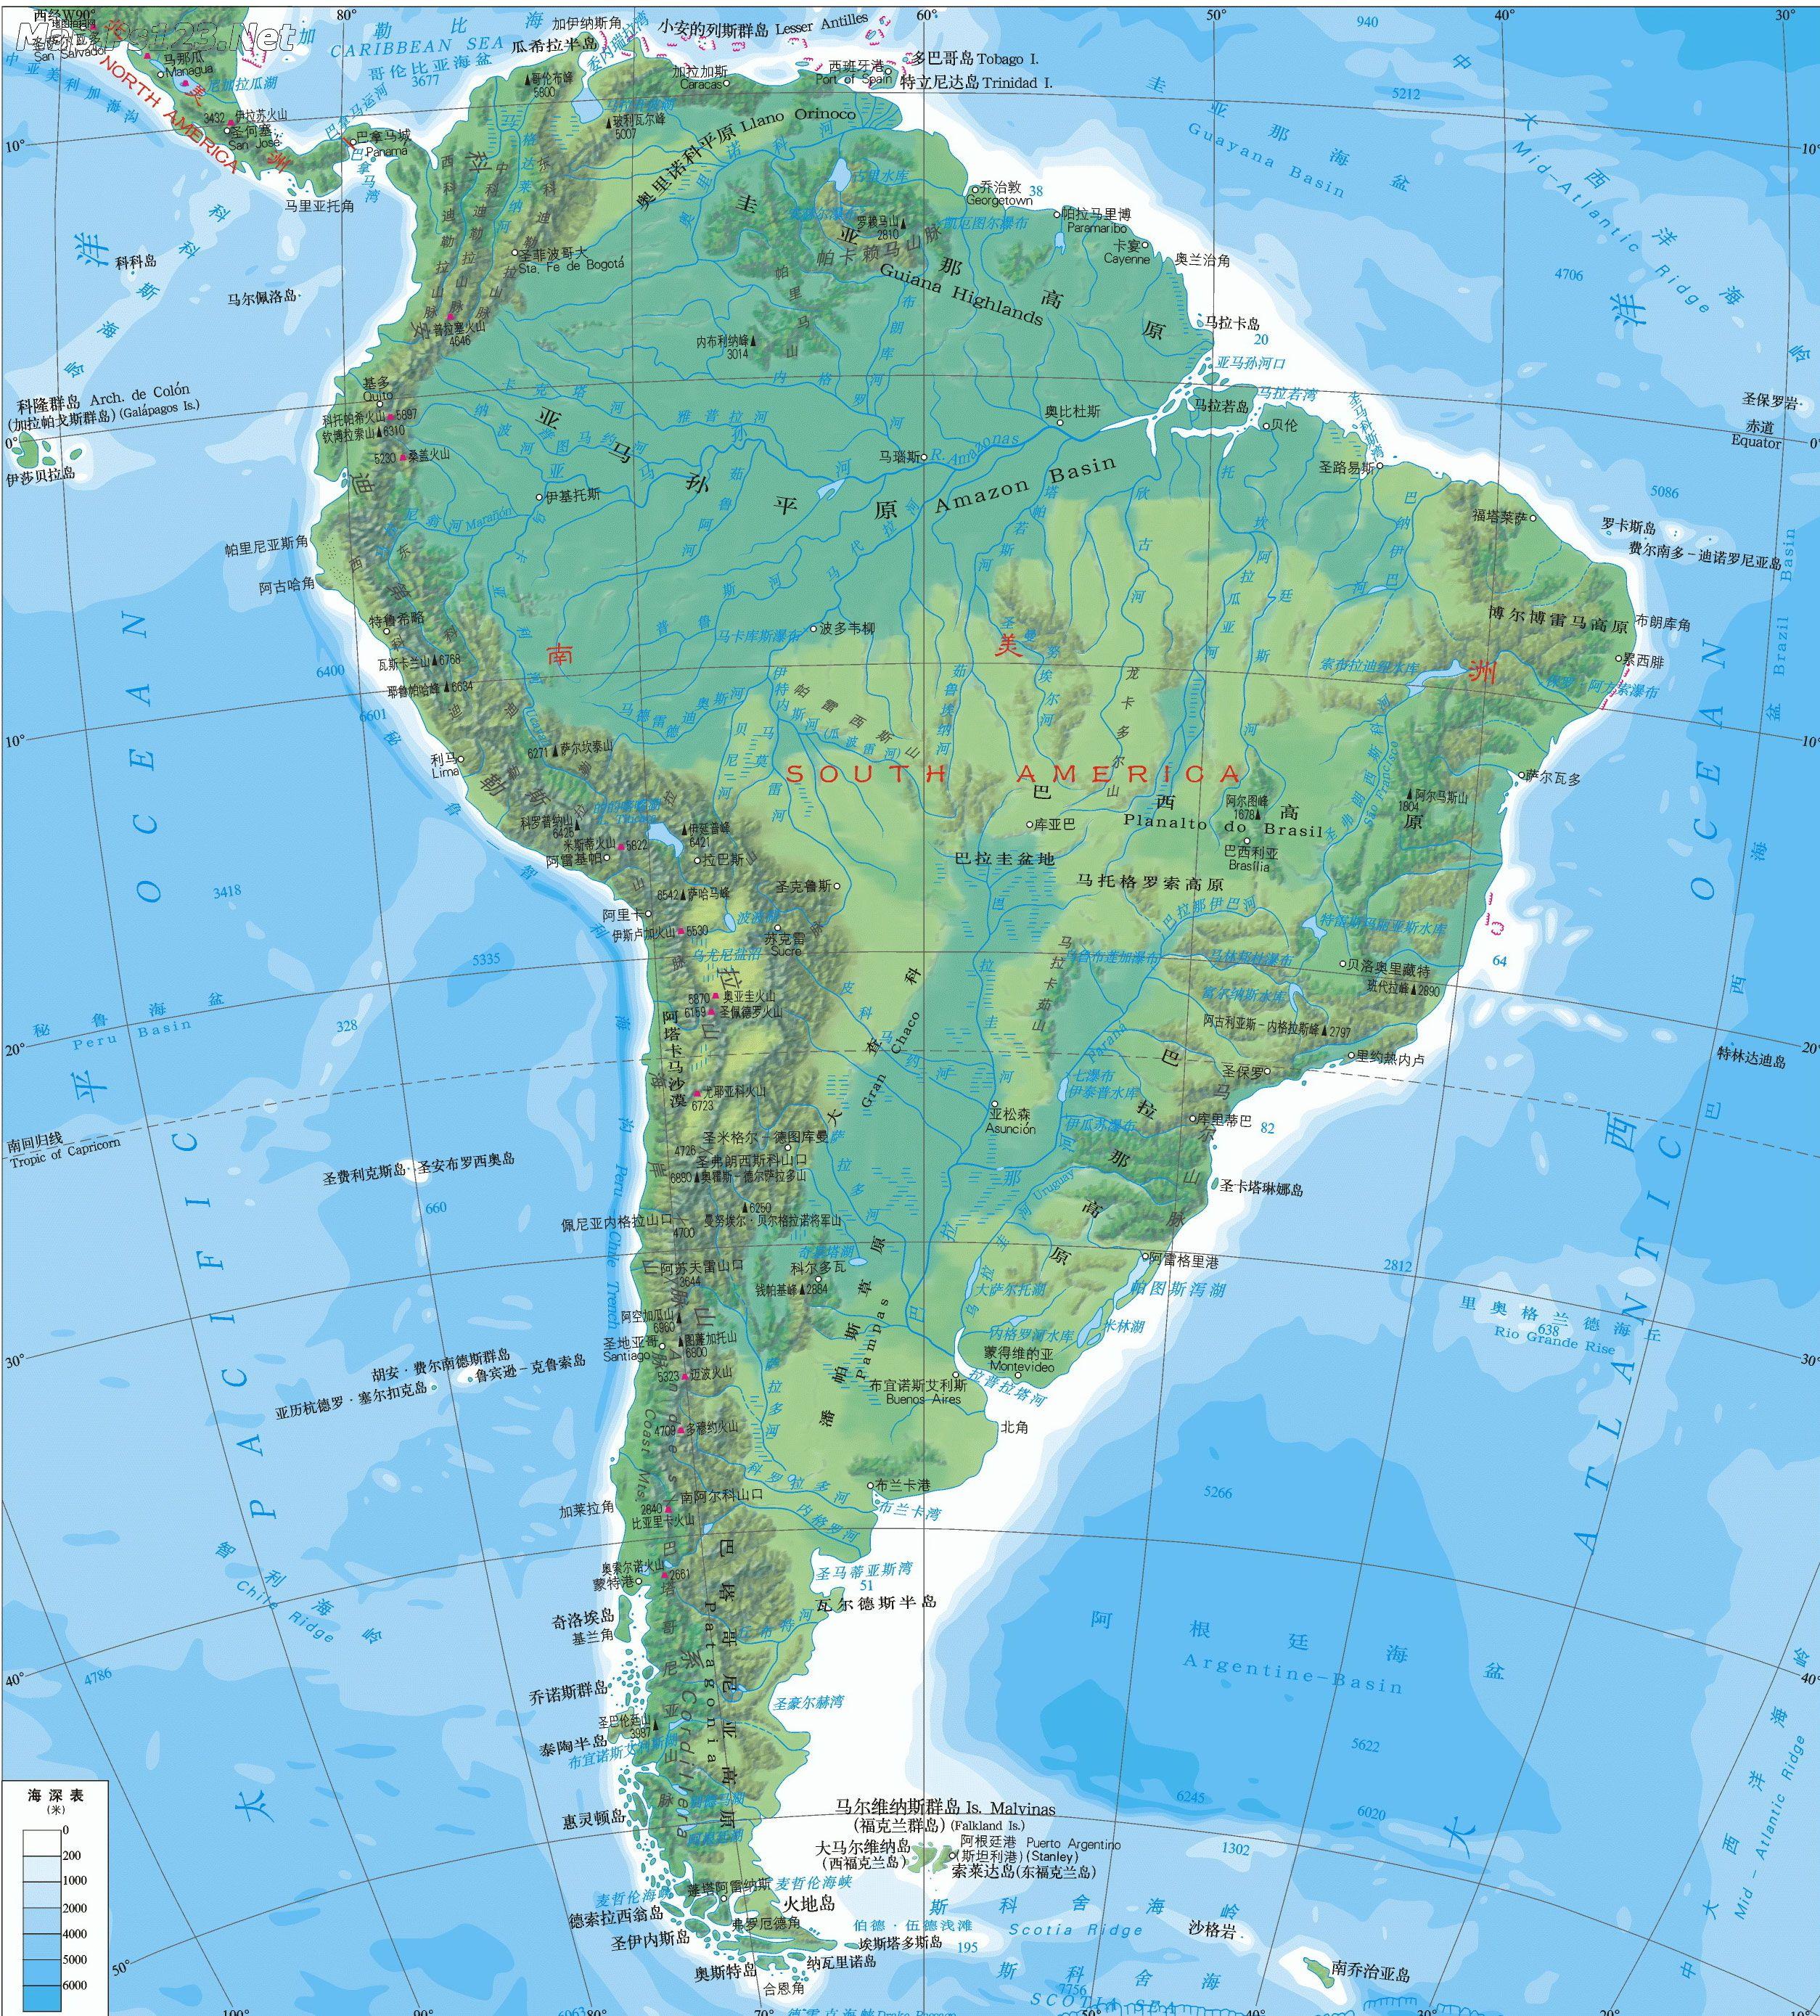 南美洲地形图_南美洲地图库_地图窝